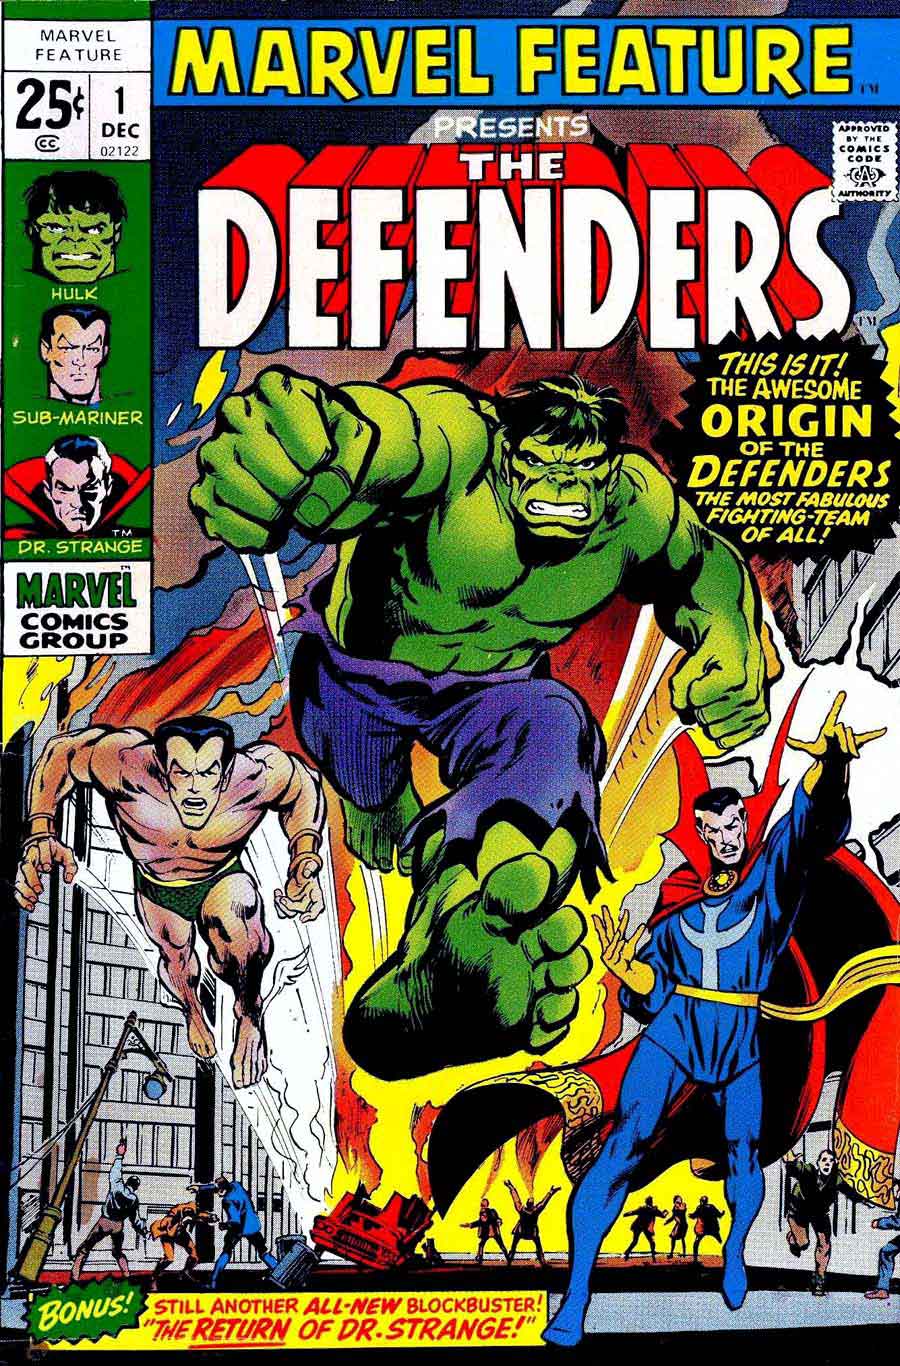 Preview Lengkap Marvel's The Defenders Nih Gan!